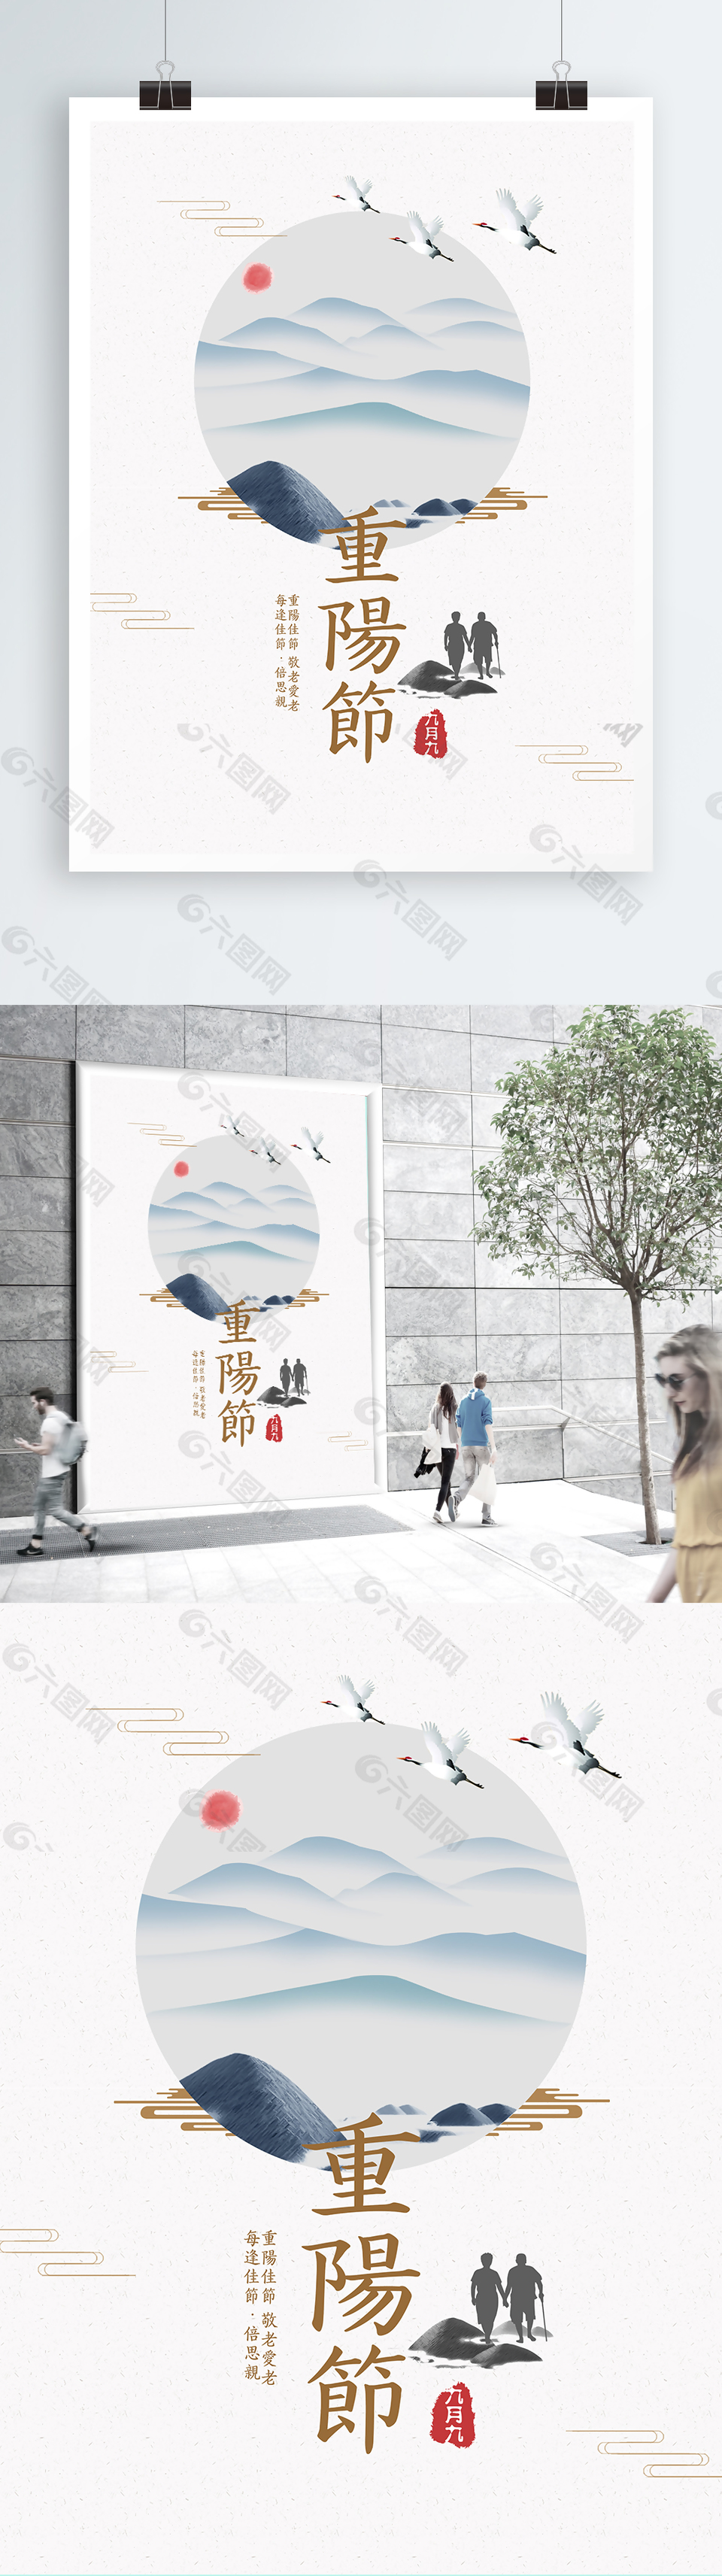 中国传统节日重阳节微信配图海报